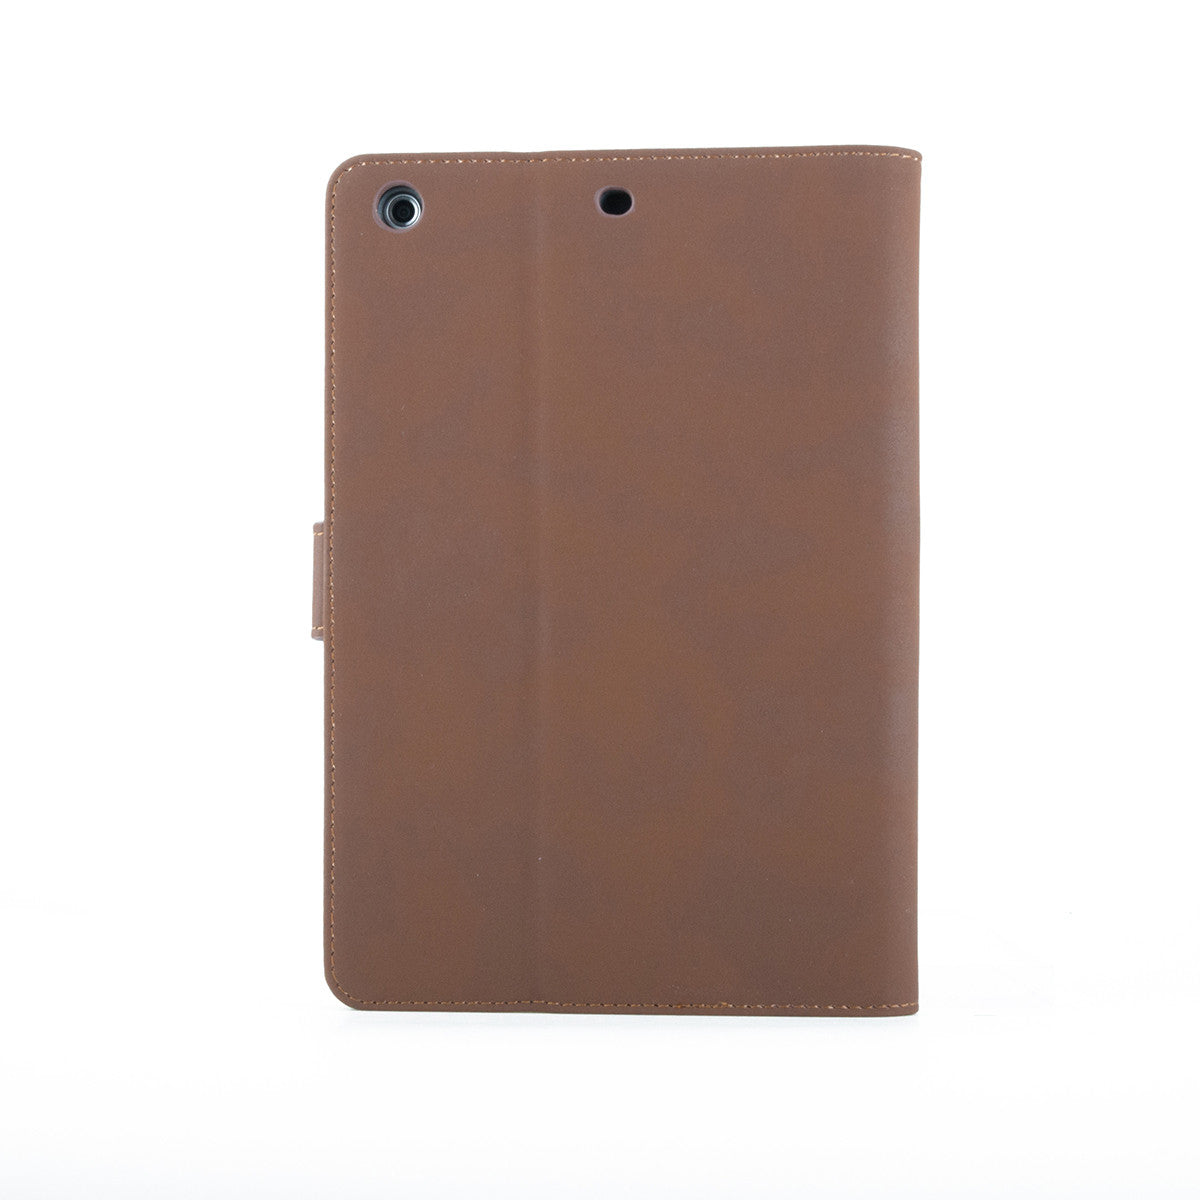 Bracevor Executive Brown Smart Leather Case for Apple iPad mini 1